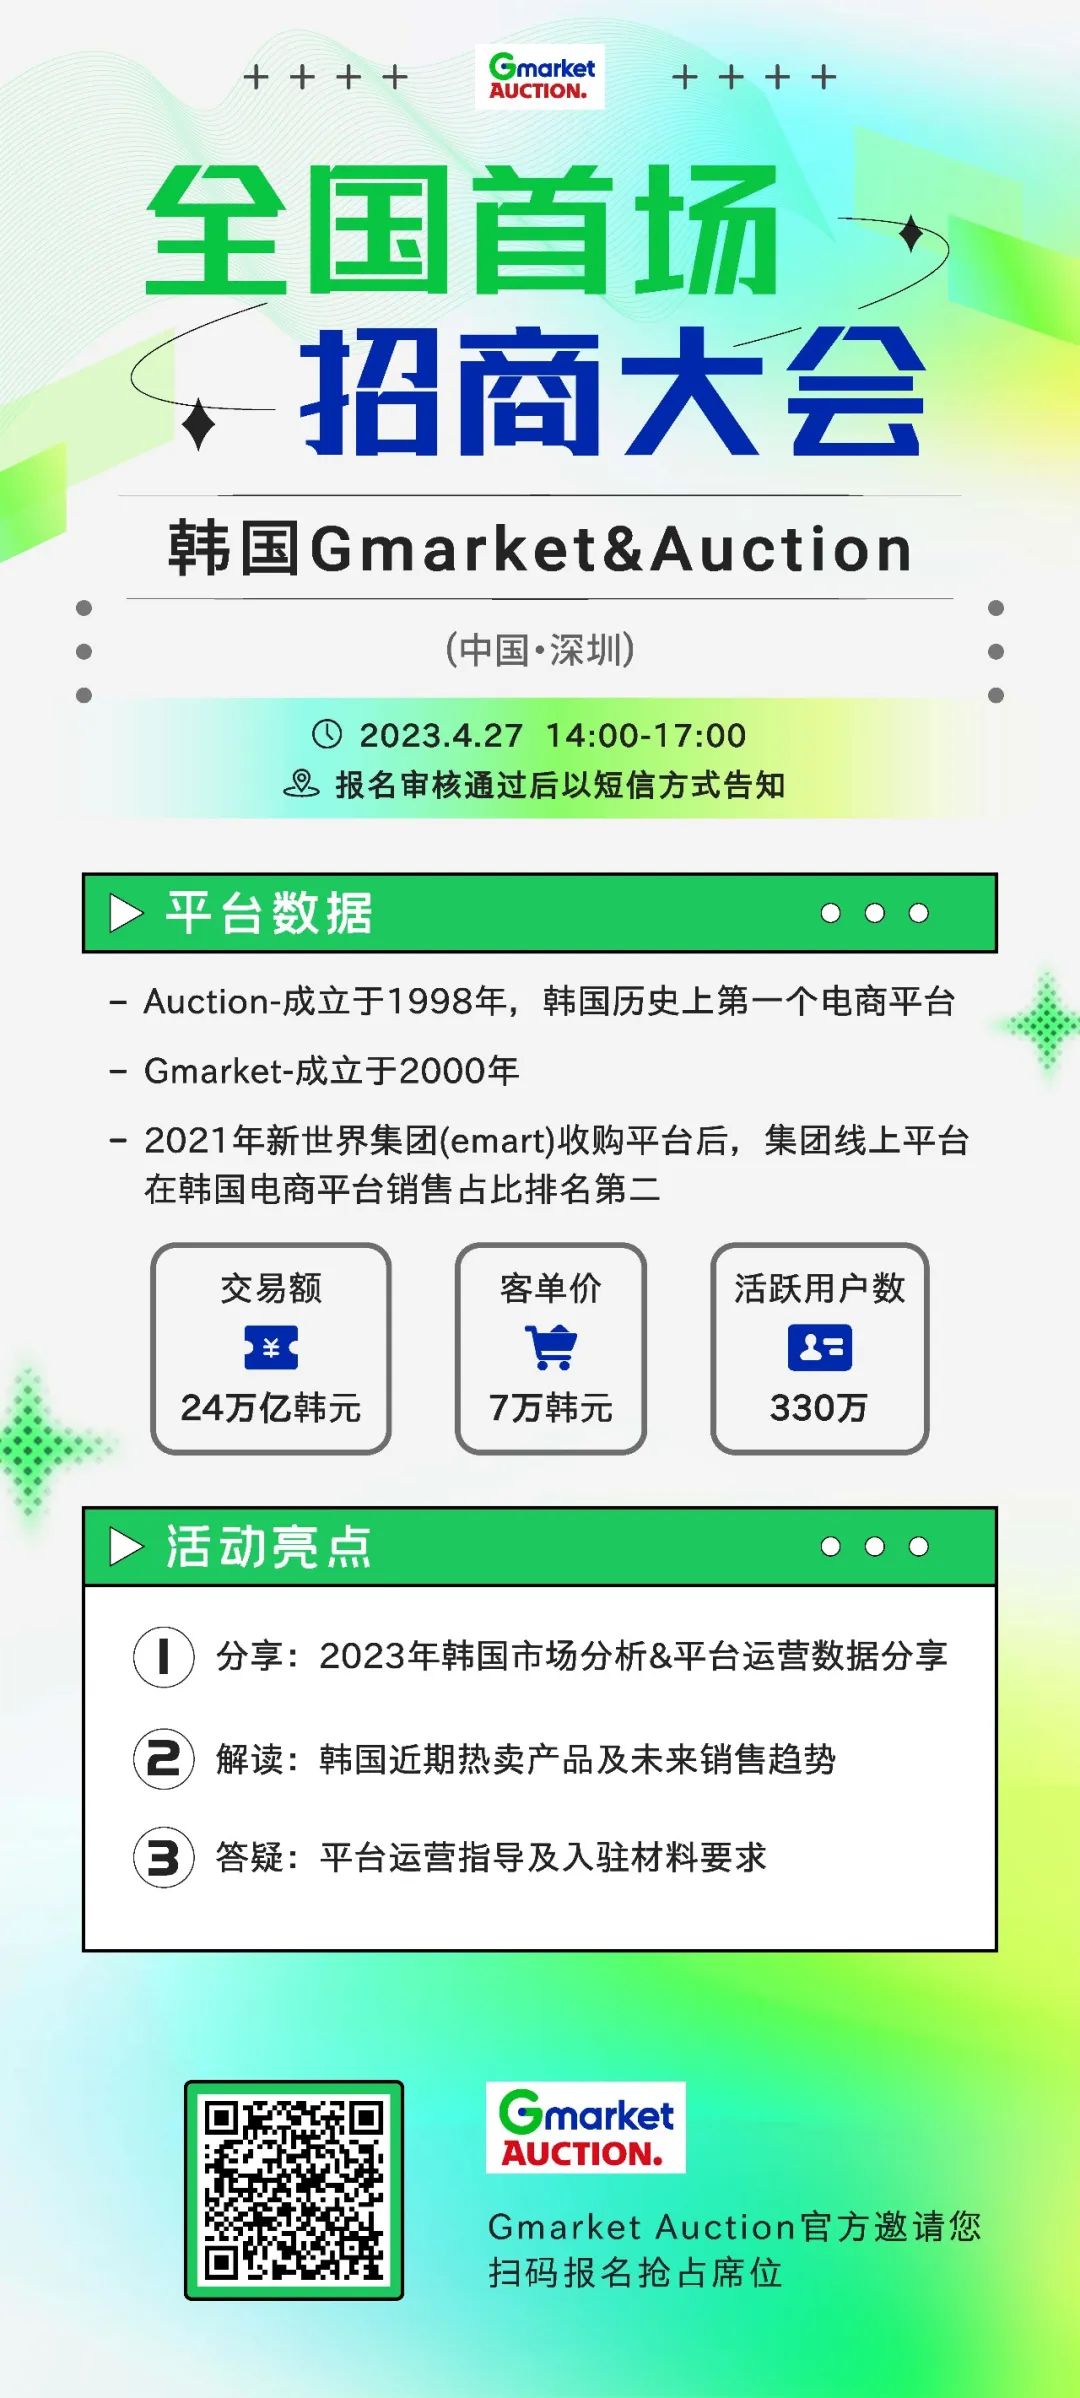 2023年 | 韩国平台Gmarket&Auction全国首场招商会4月27日深圳开启！ 无效 第1张